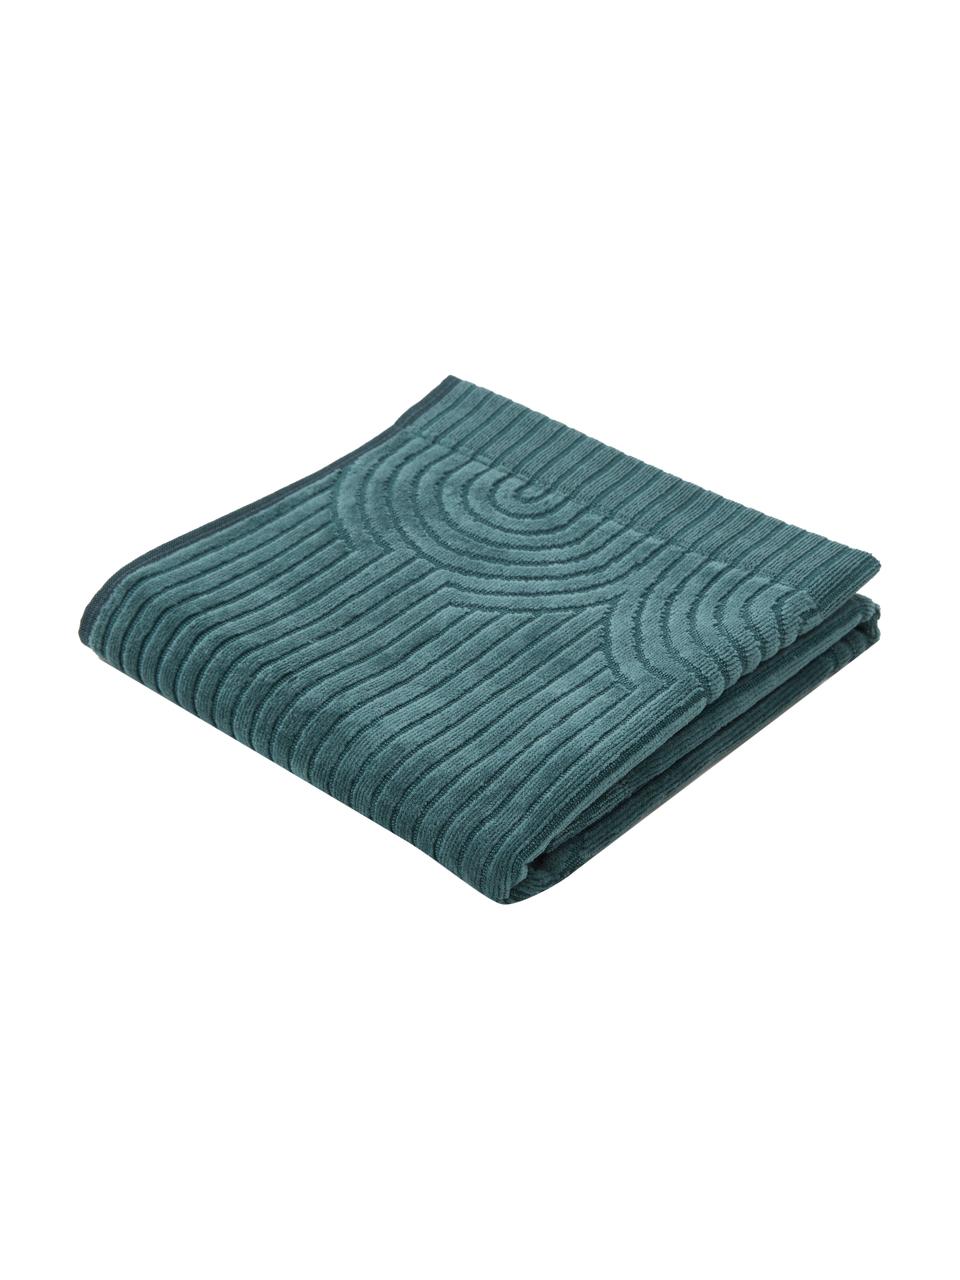 Handdoek Janet in verschillende formaten met grafisch reliëfpatroon, 100% katoen, BCI-gecertificeerd, Smaragdgroen, Handdoek, B 50 x L 70 cm